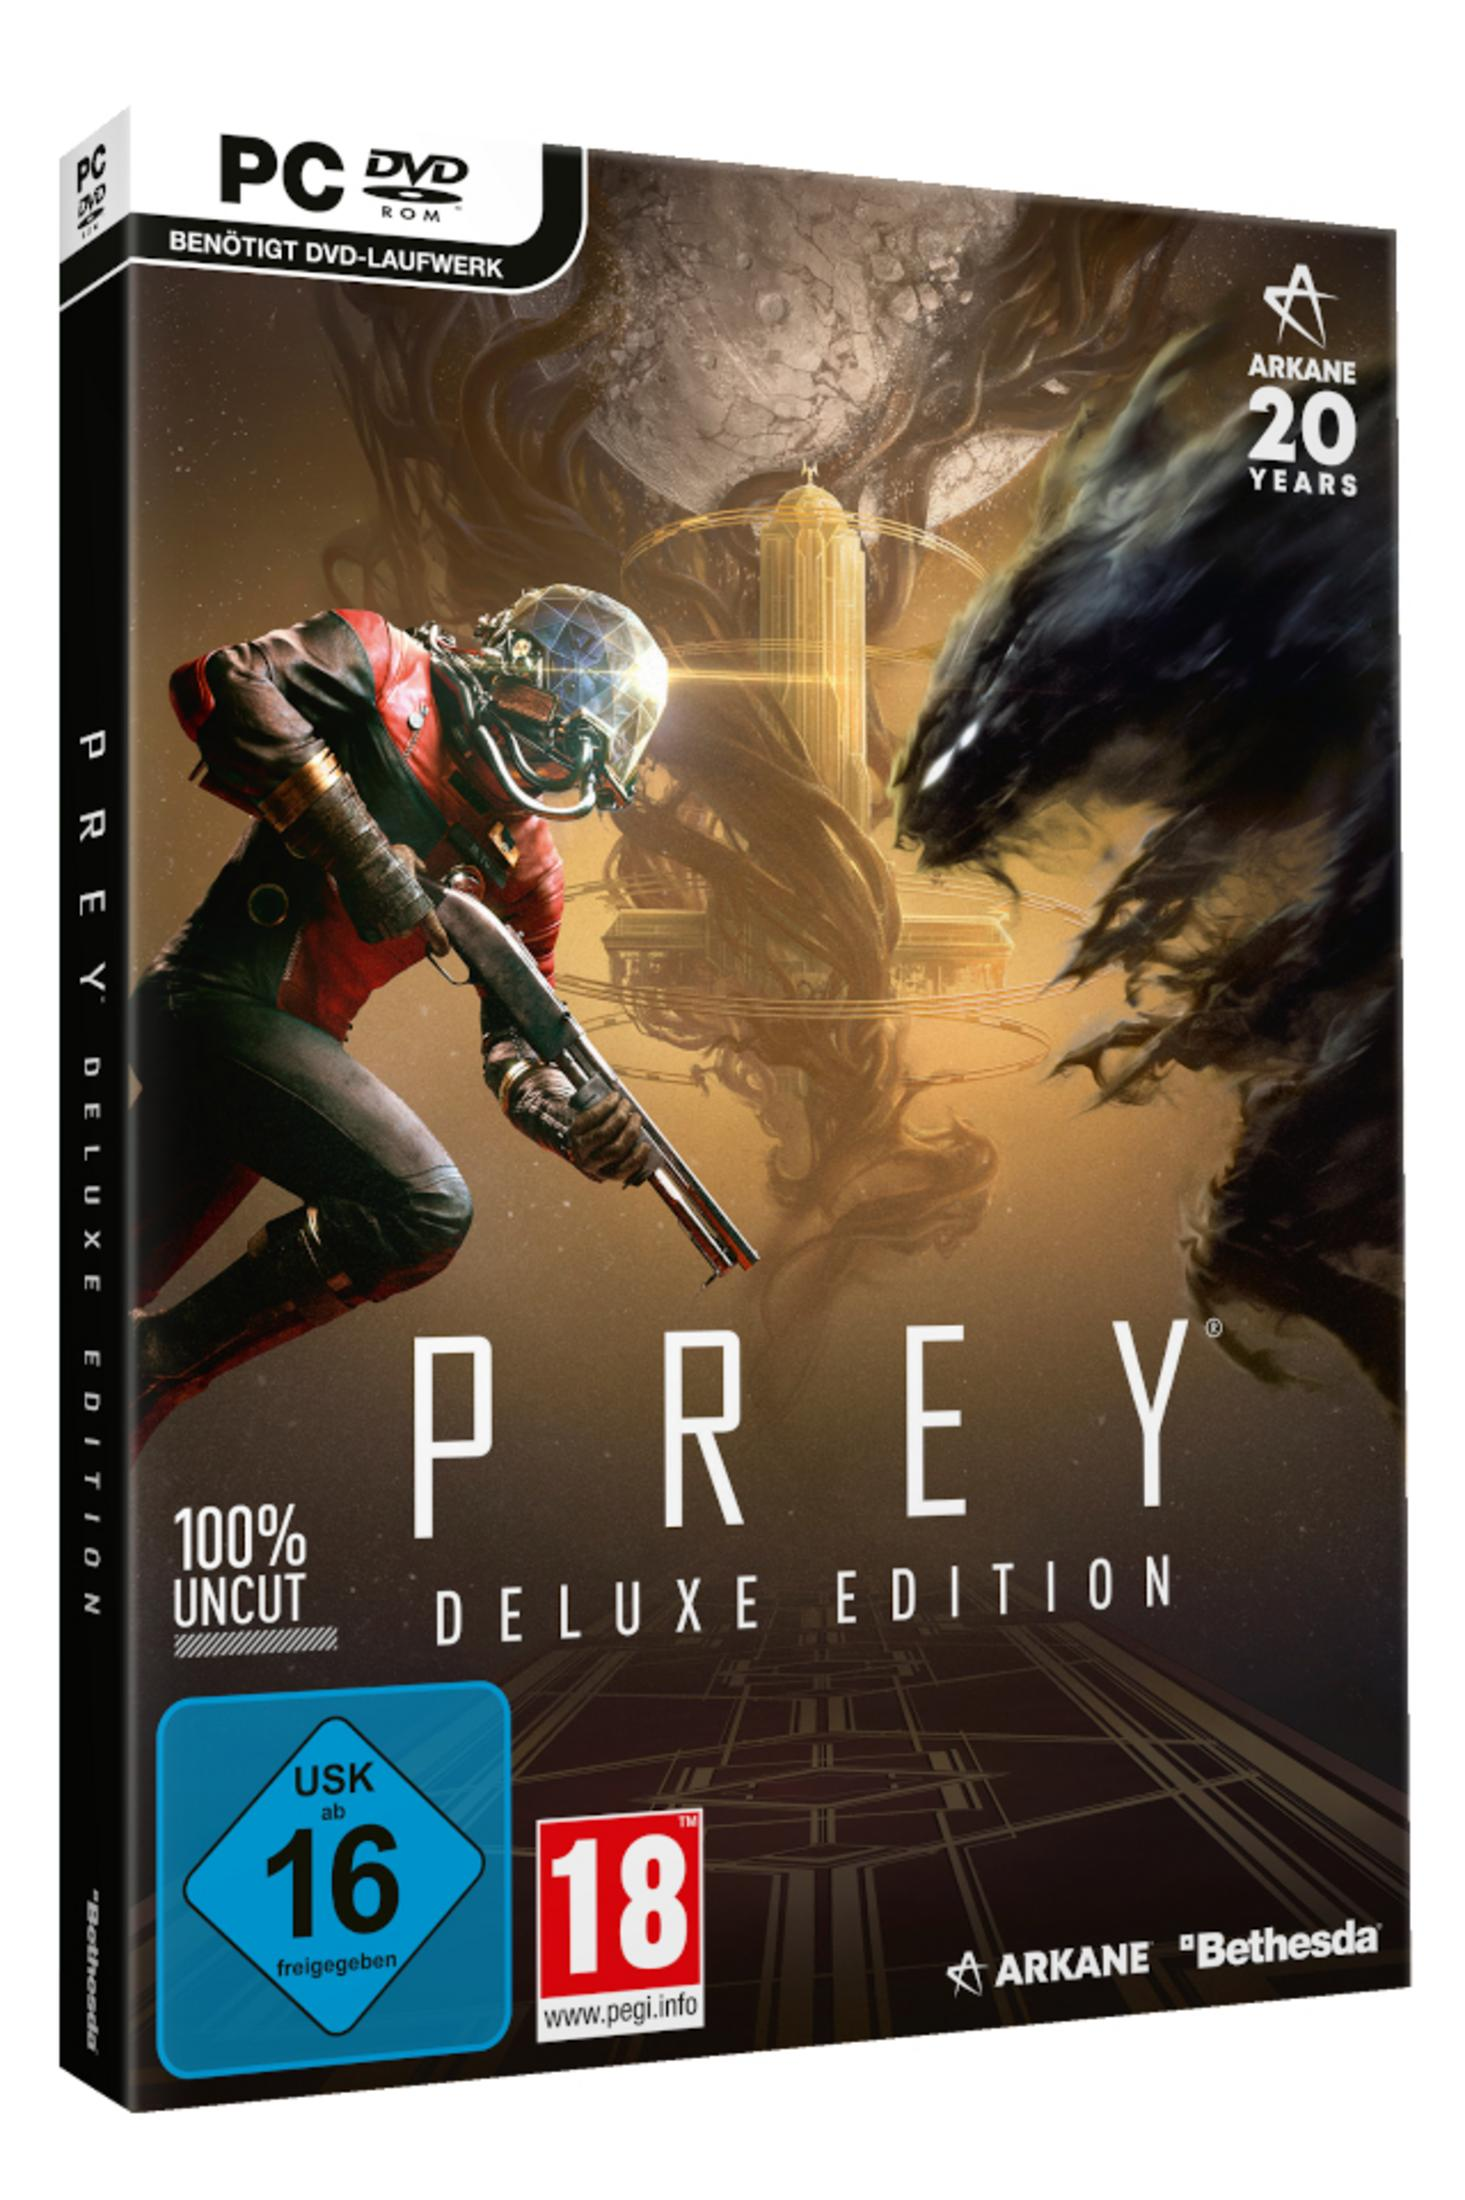 PC Edition Deluxe - [PC] Prey